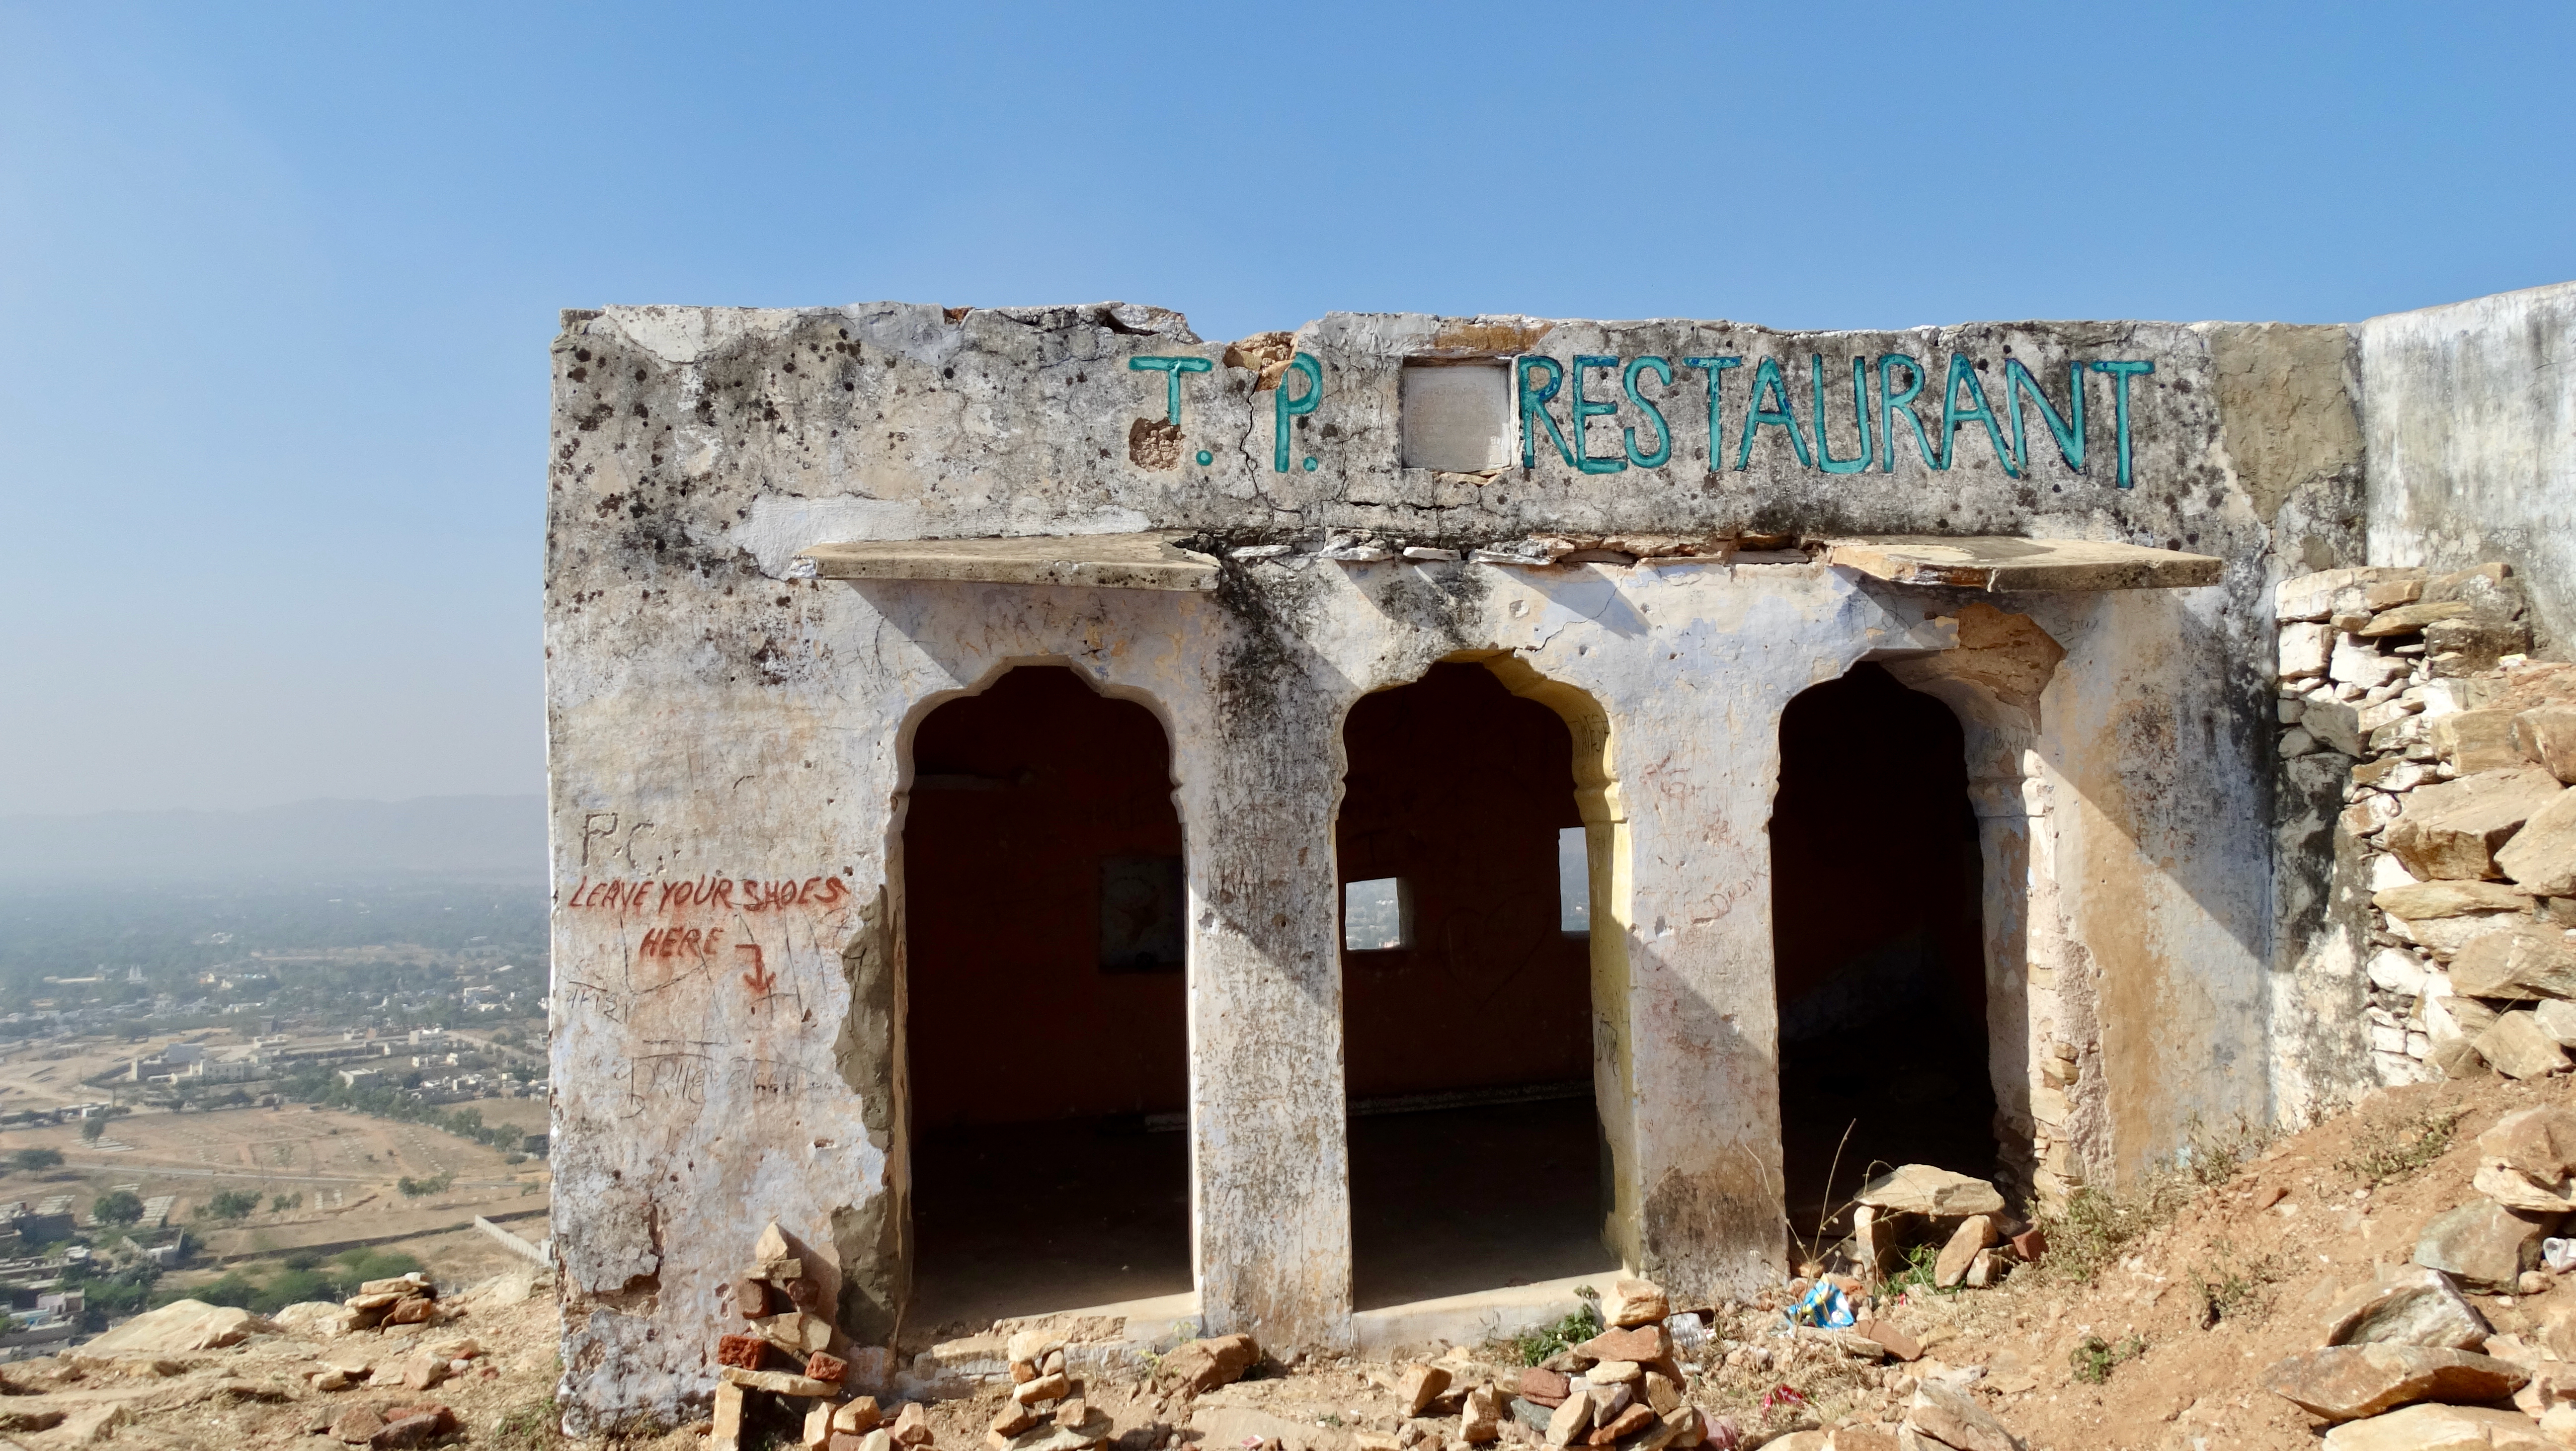 An abandoned restaurant atop a Pushkar hill